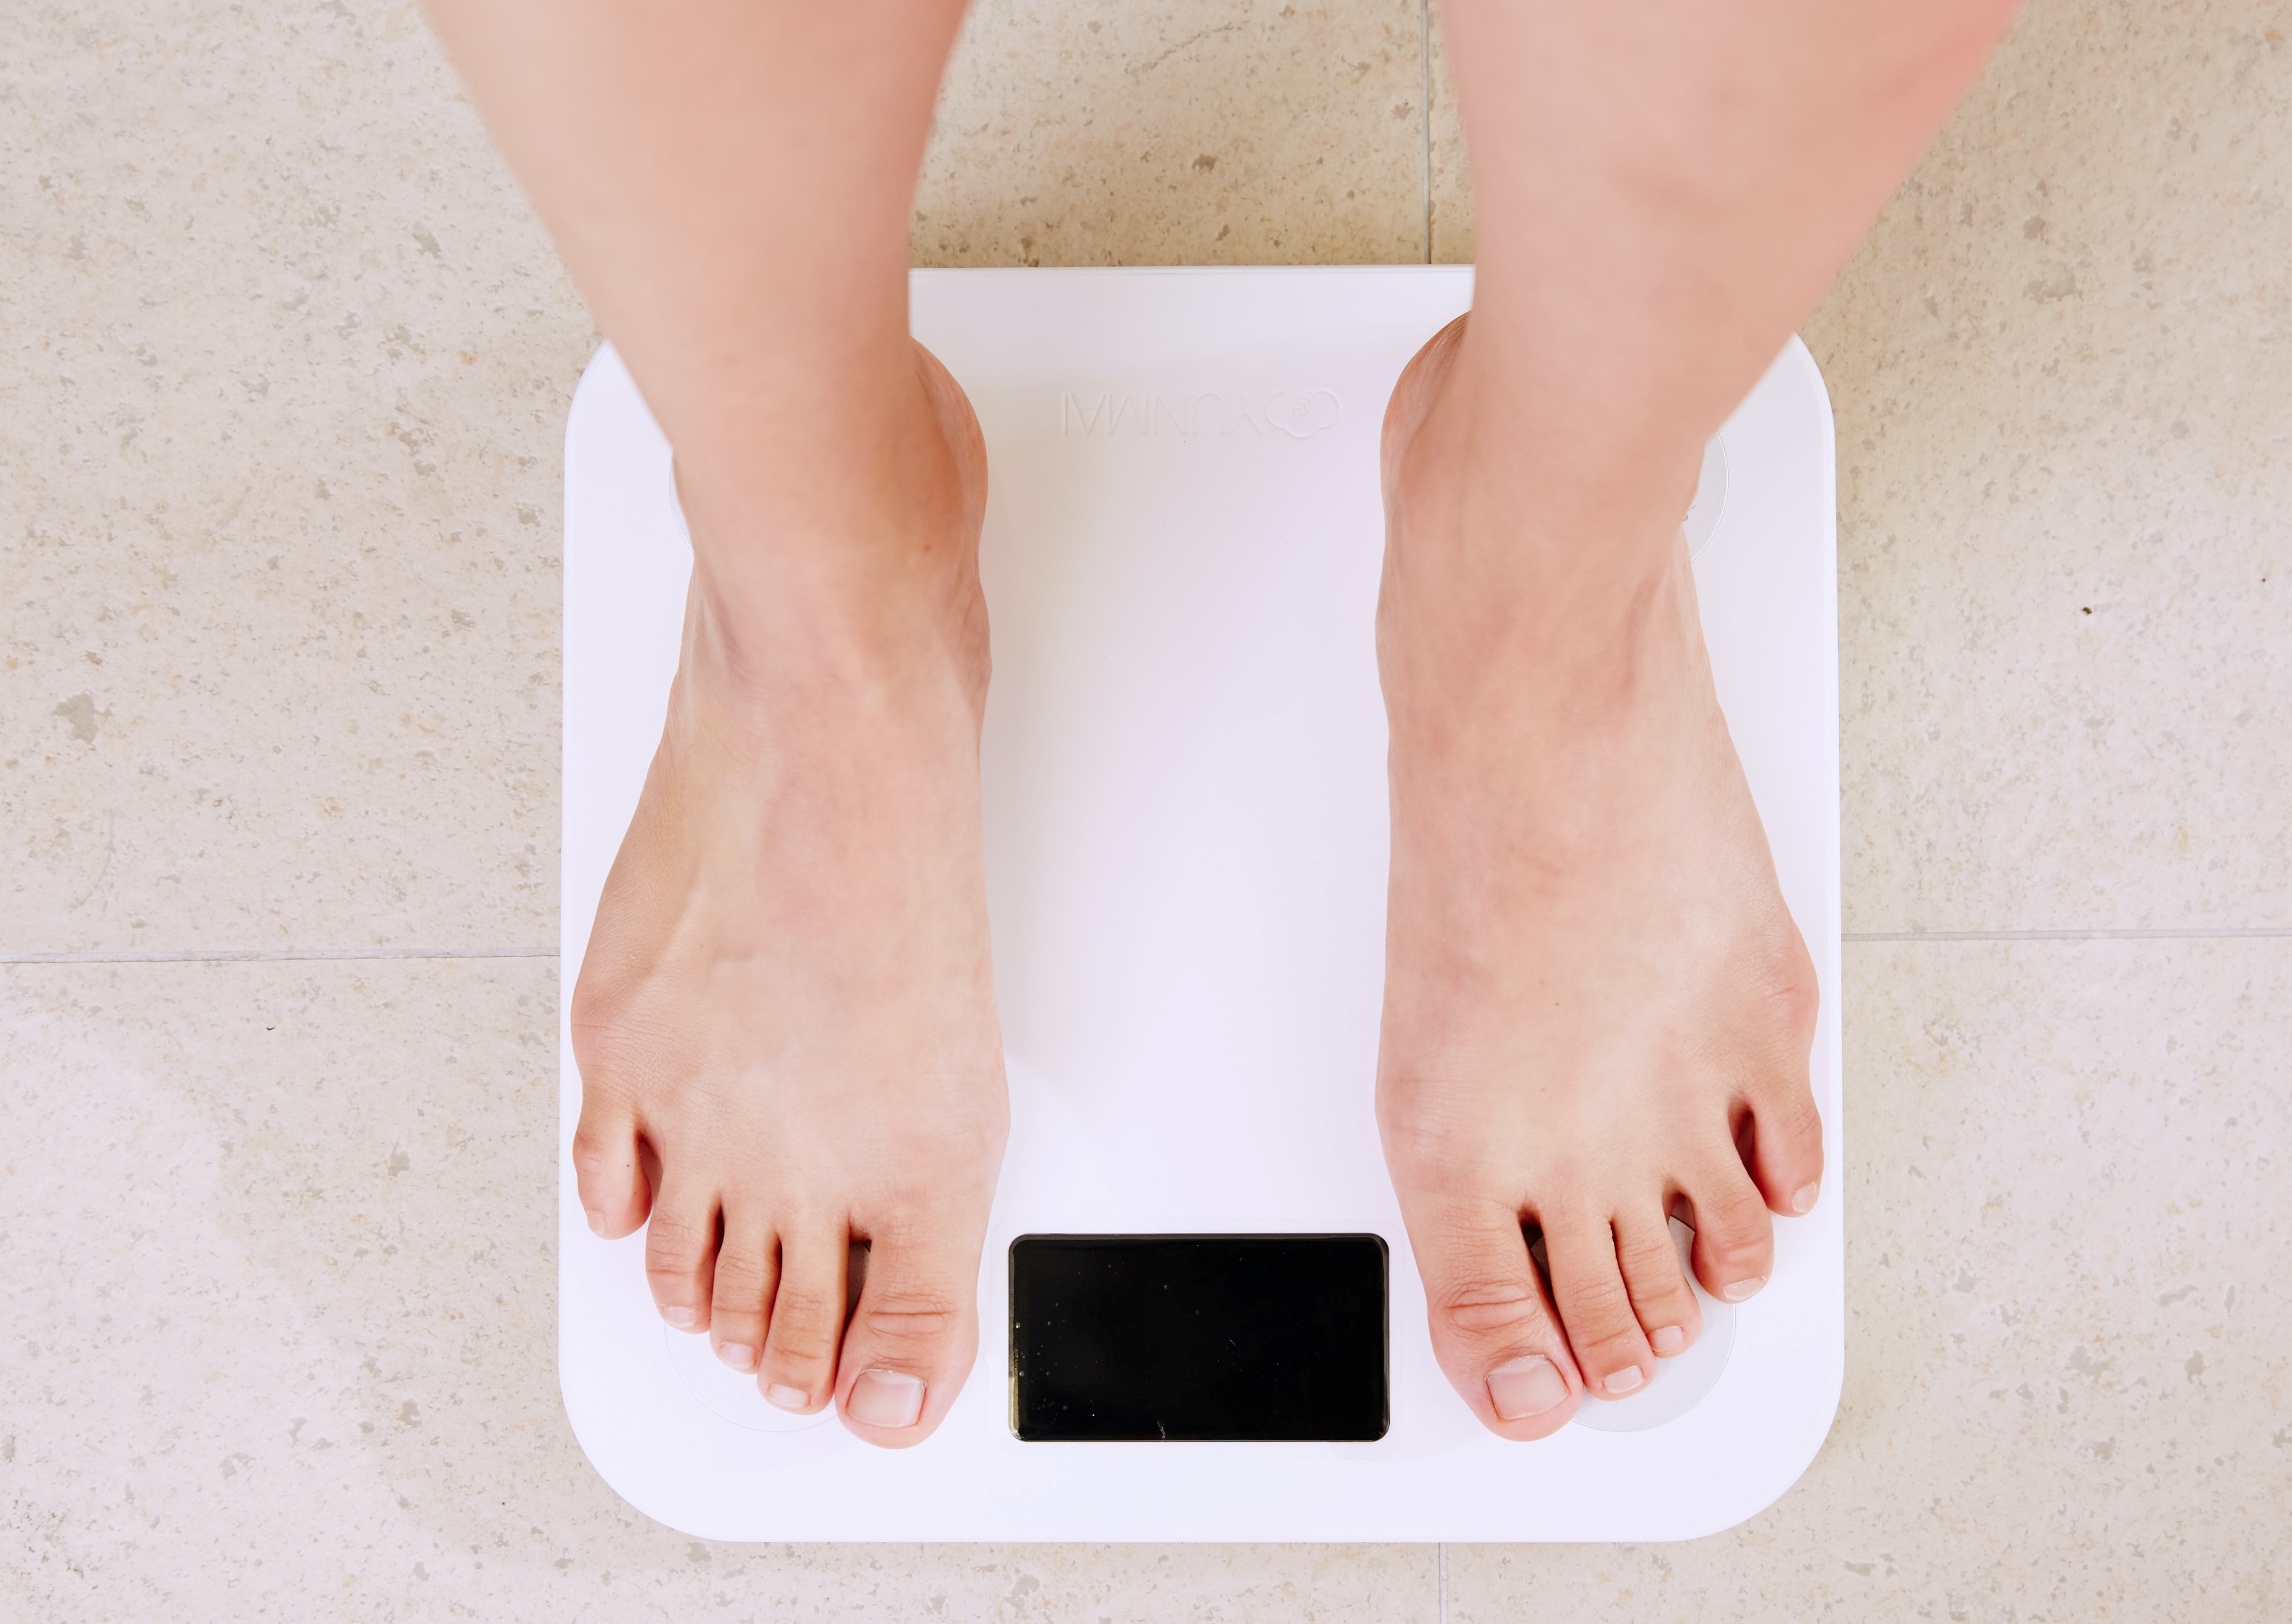 Angajații cu obezitate lipsesc mai des de la locul de muncă și au un randament mai scăzut